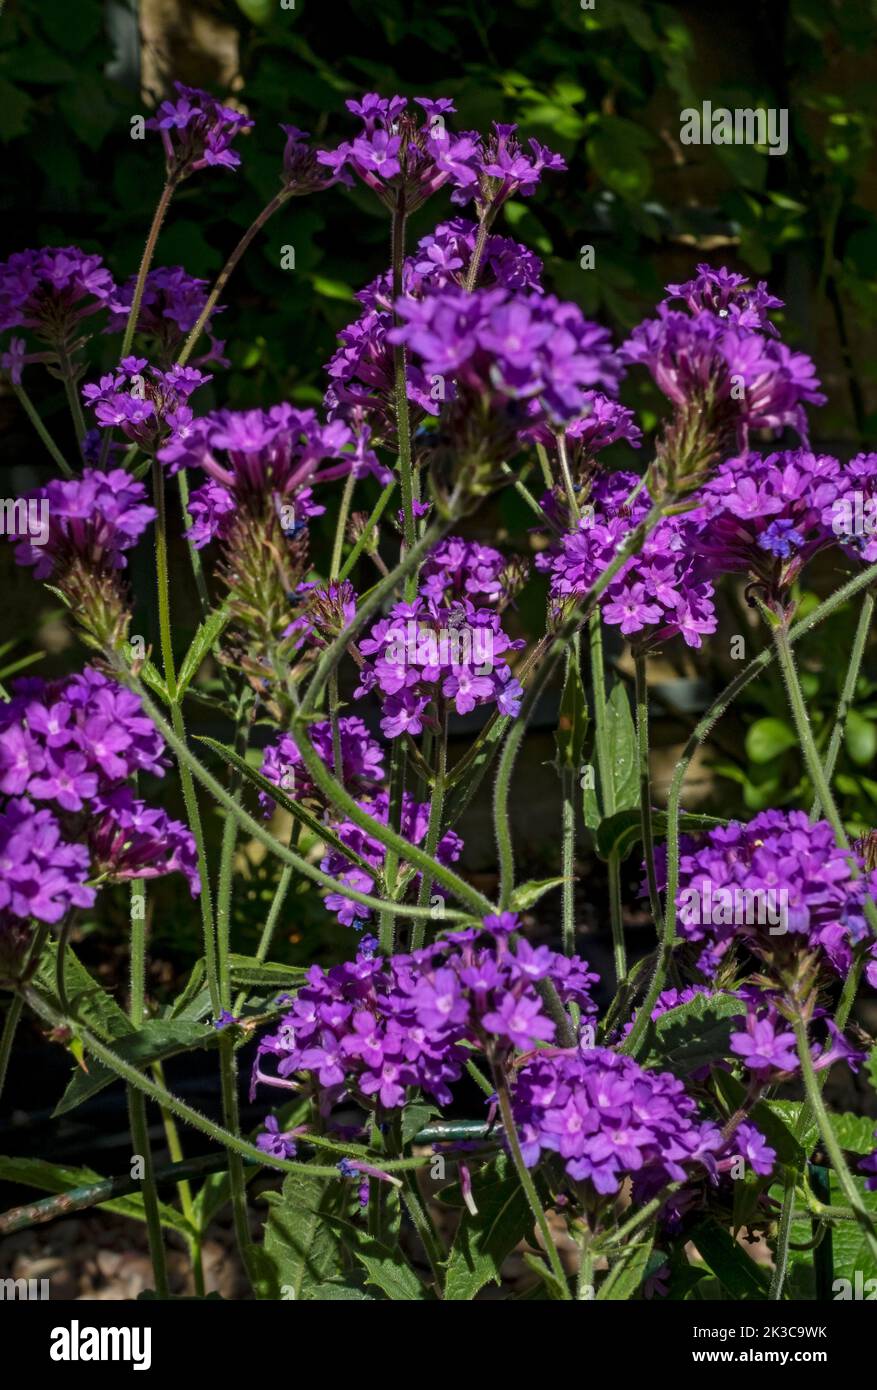 Gros plan de la verveine violette rigida venosa fleurs vervain verbenaceae fleurs fleuries croissant à la frontière en été Angleterre Royaume-Uni Grande-Bretagne Banque D'Images